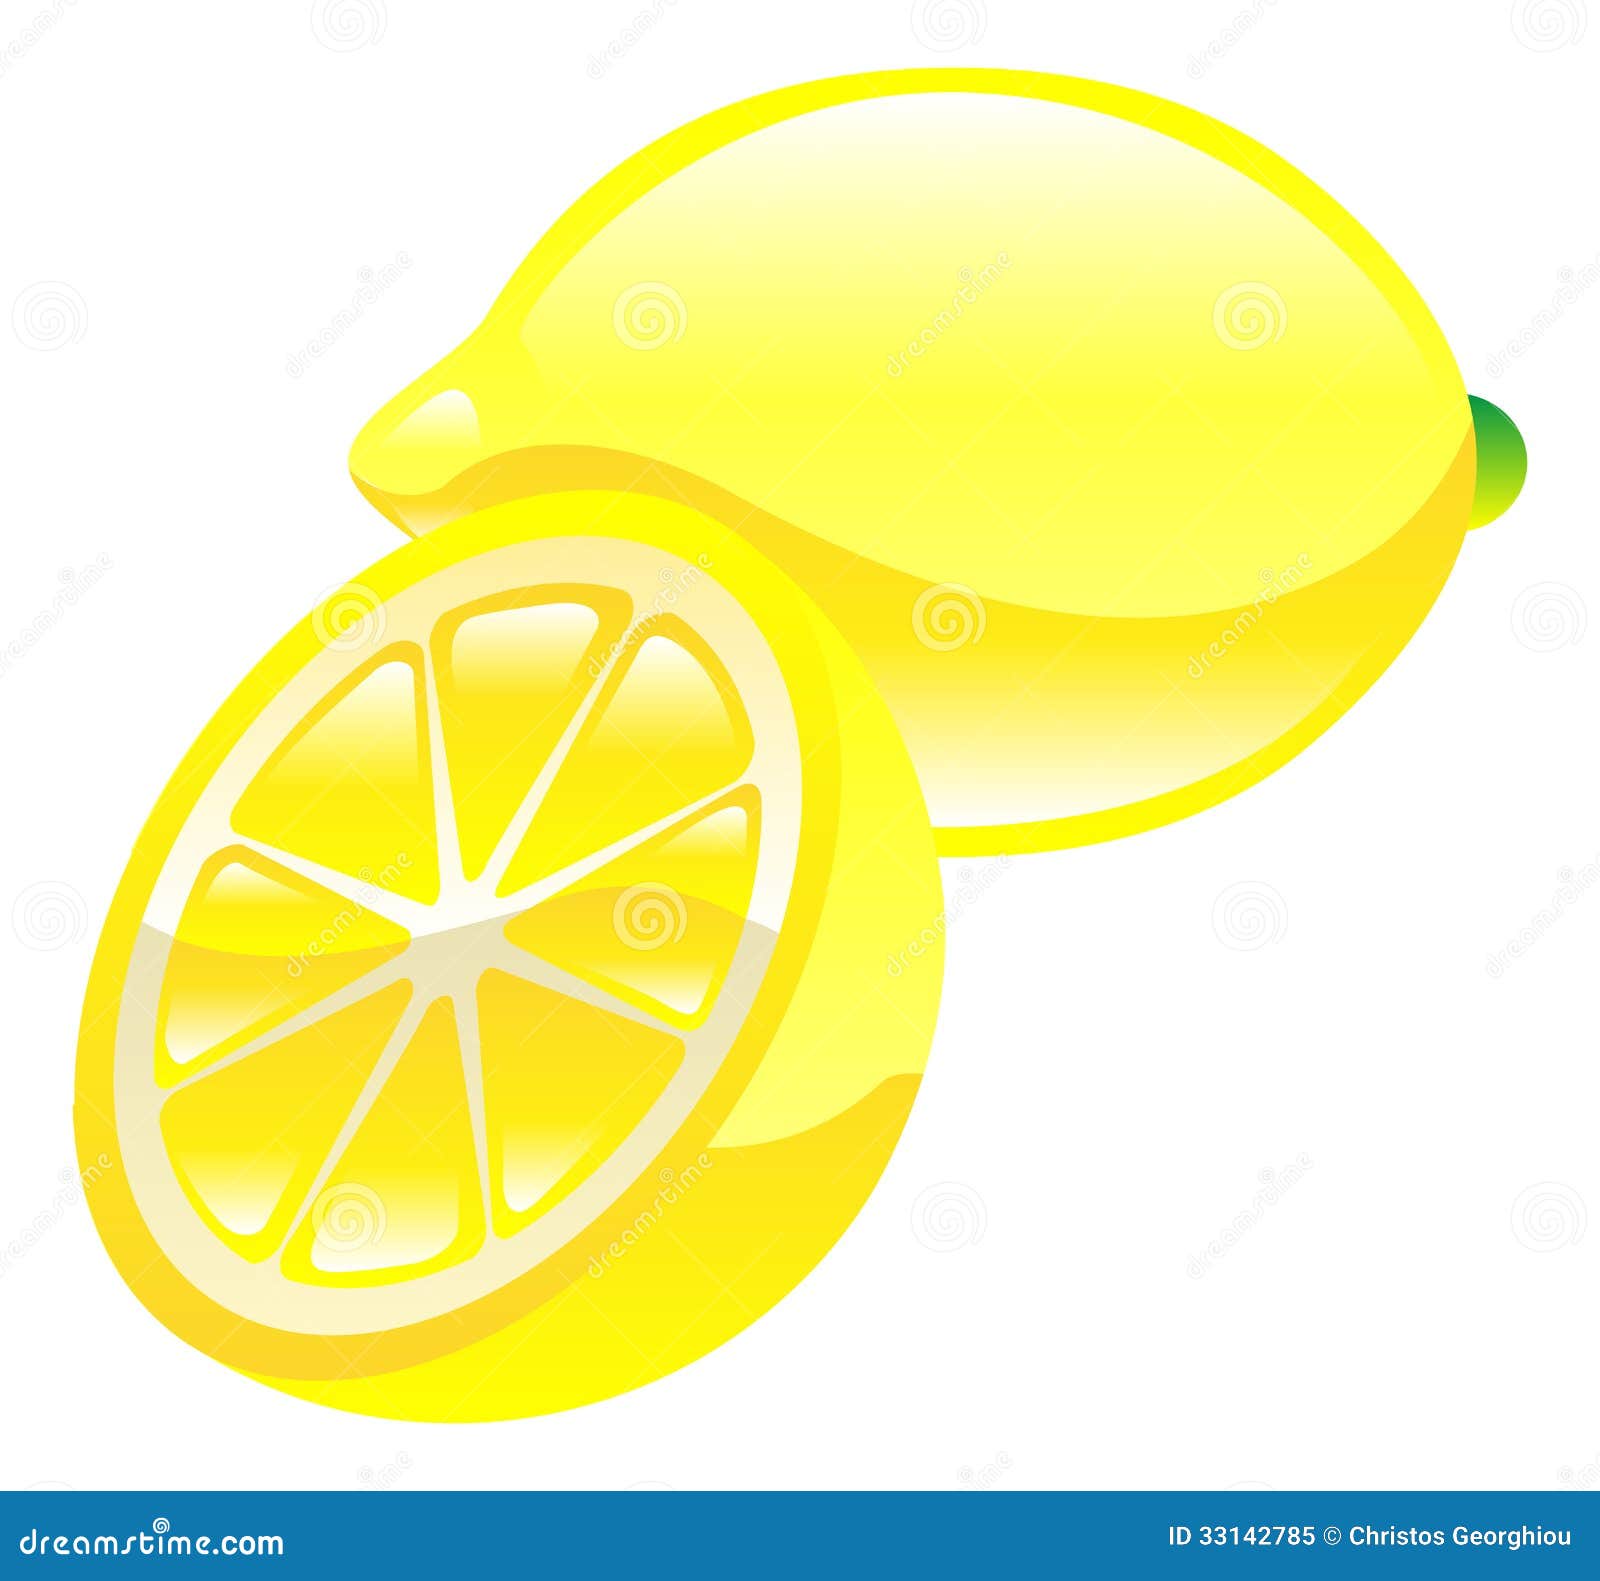 lemon drop clipart - photo #32